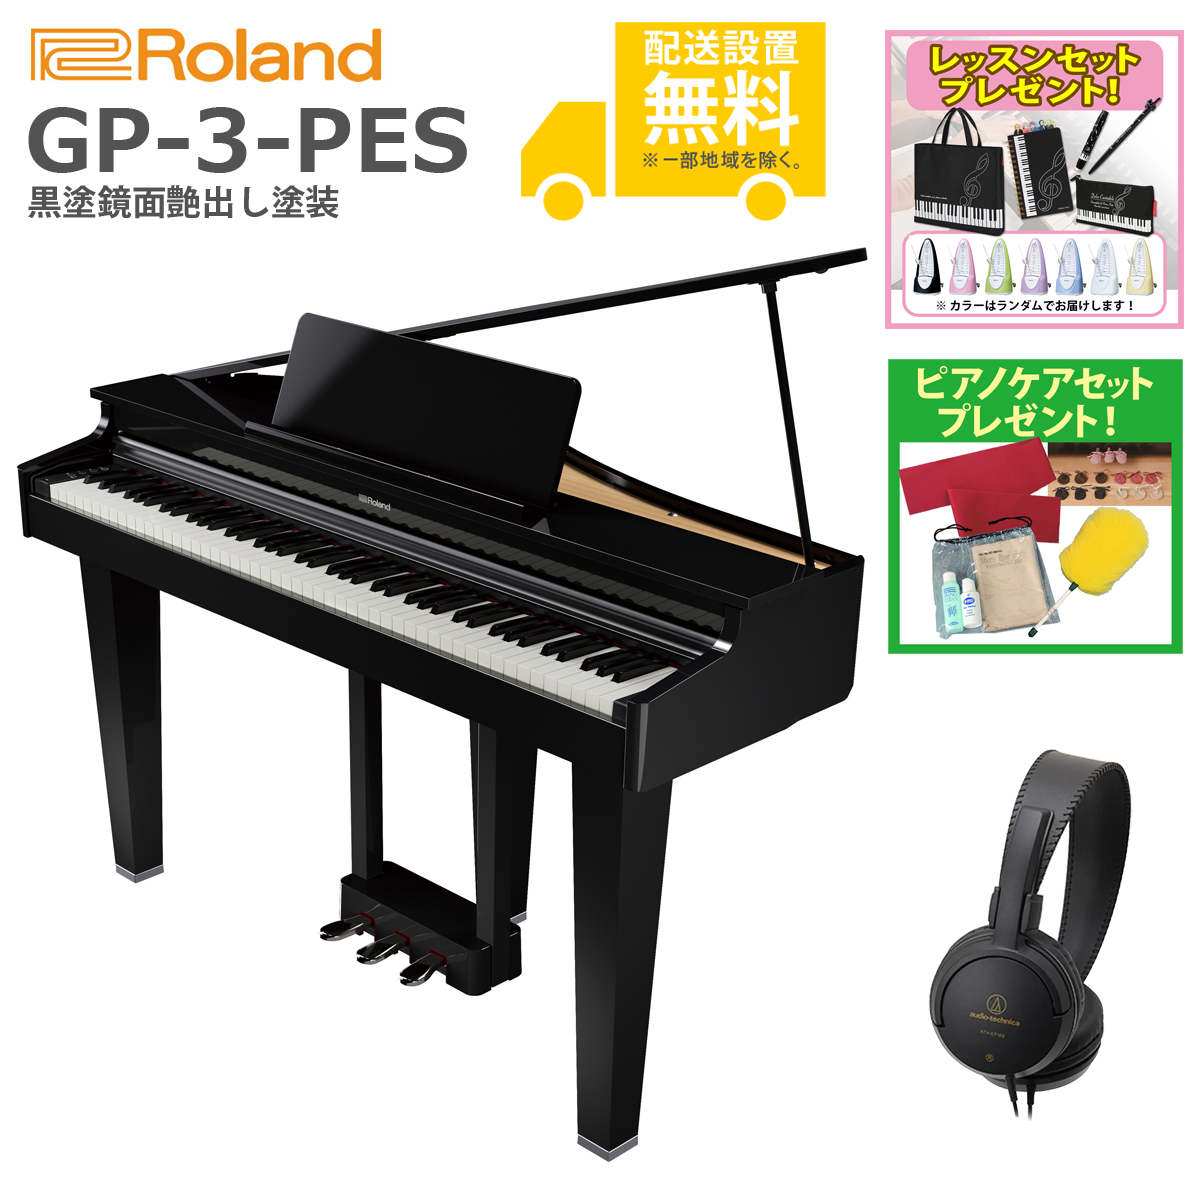 国内初の直営店 GP-3-PES ローランド 電子ピアノ ブラック Roland Home Piano GPシリーズ